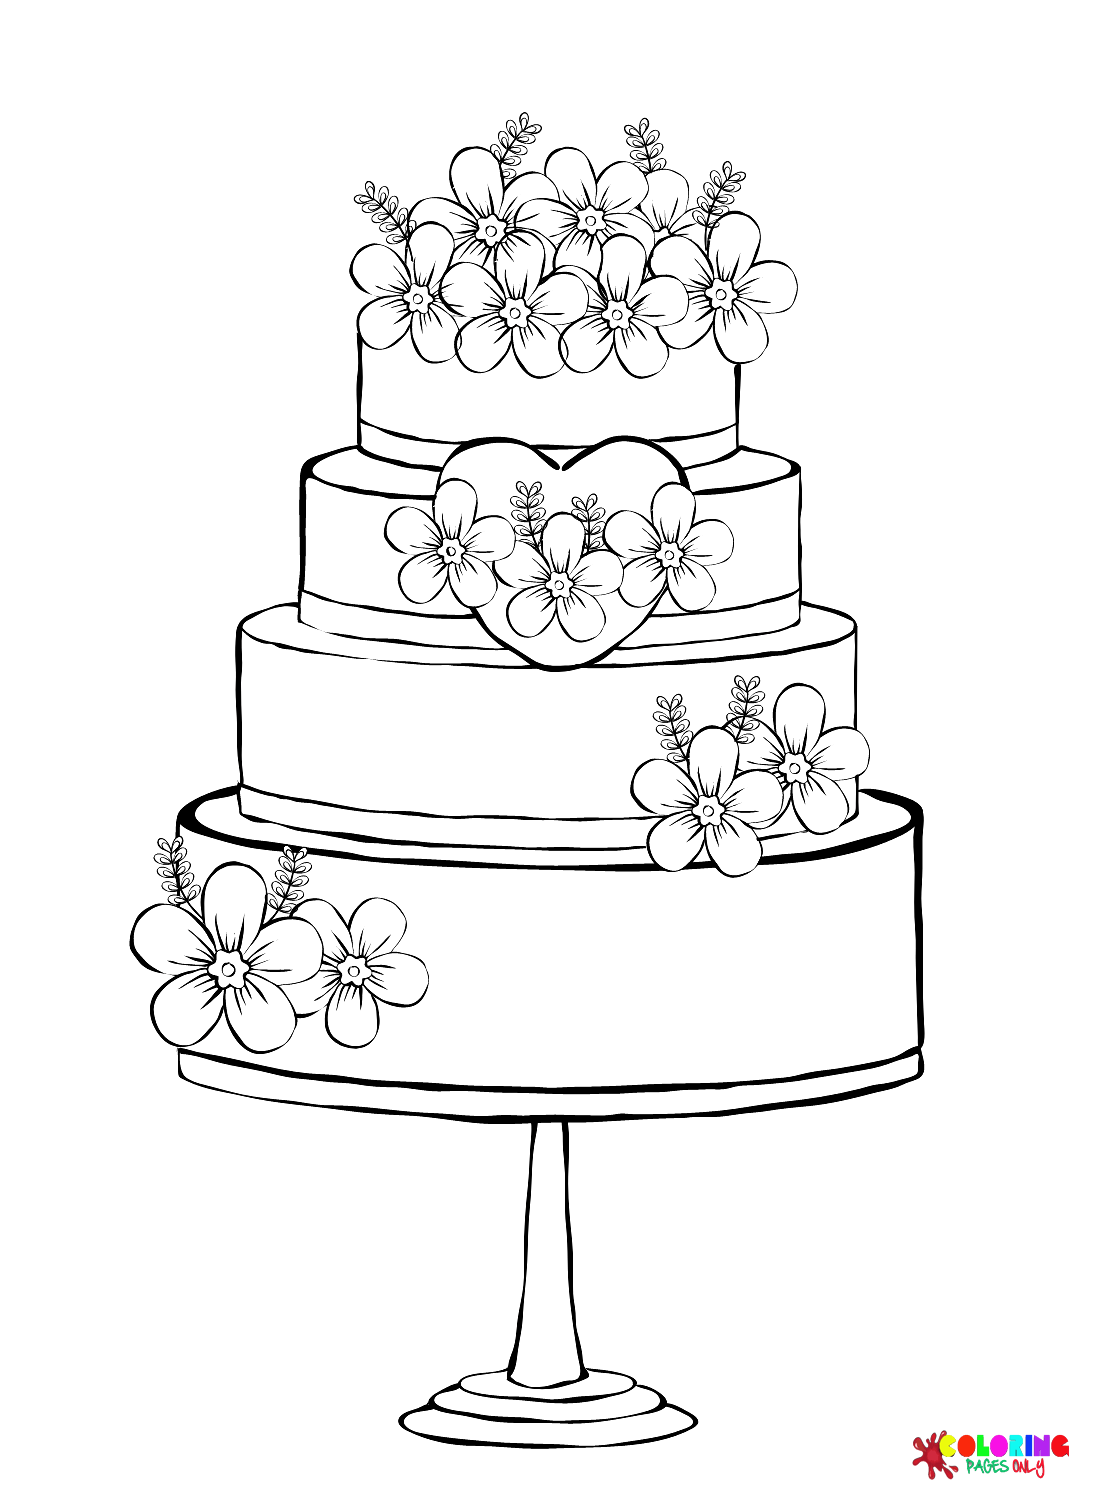 Zoete bruidstaart met bloemen kleurplaat